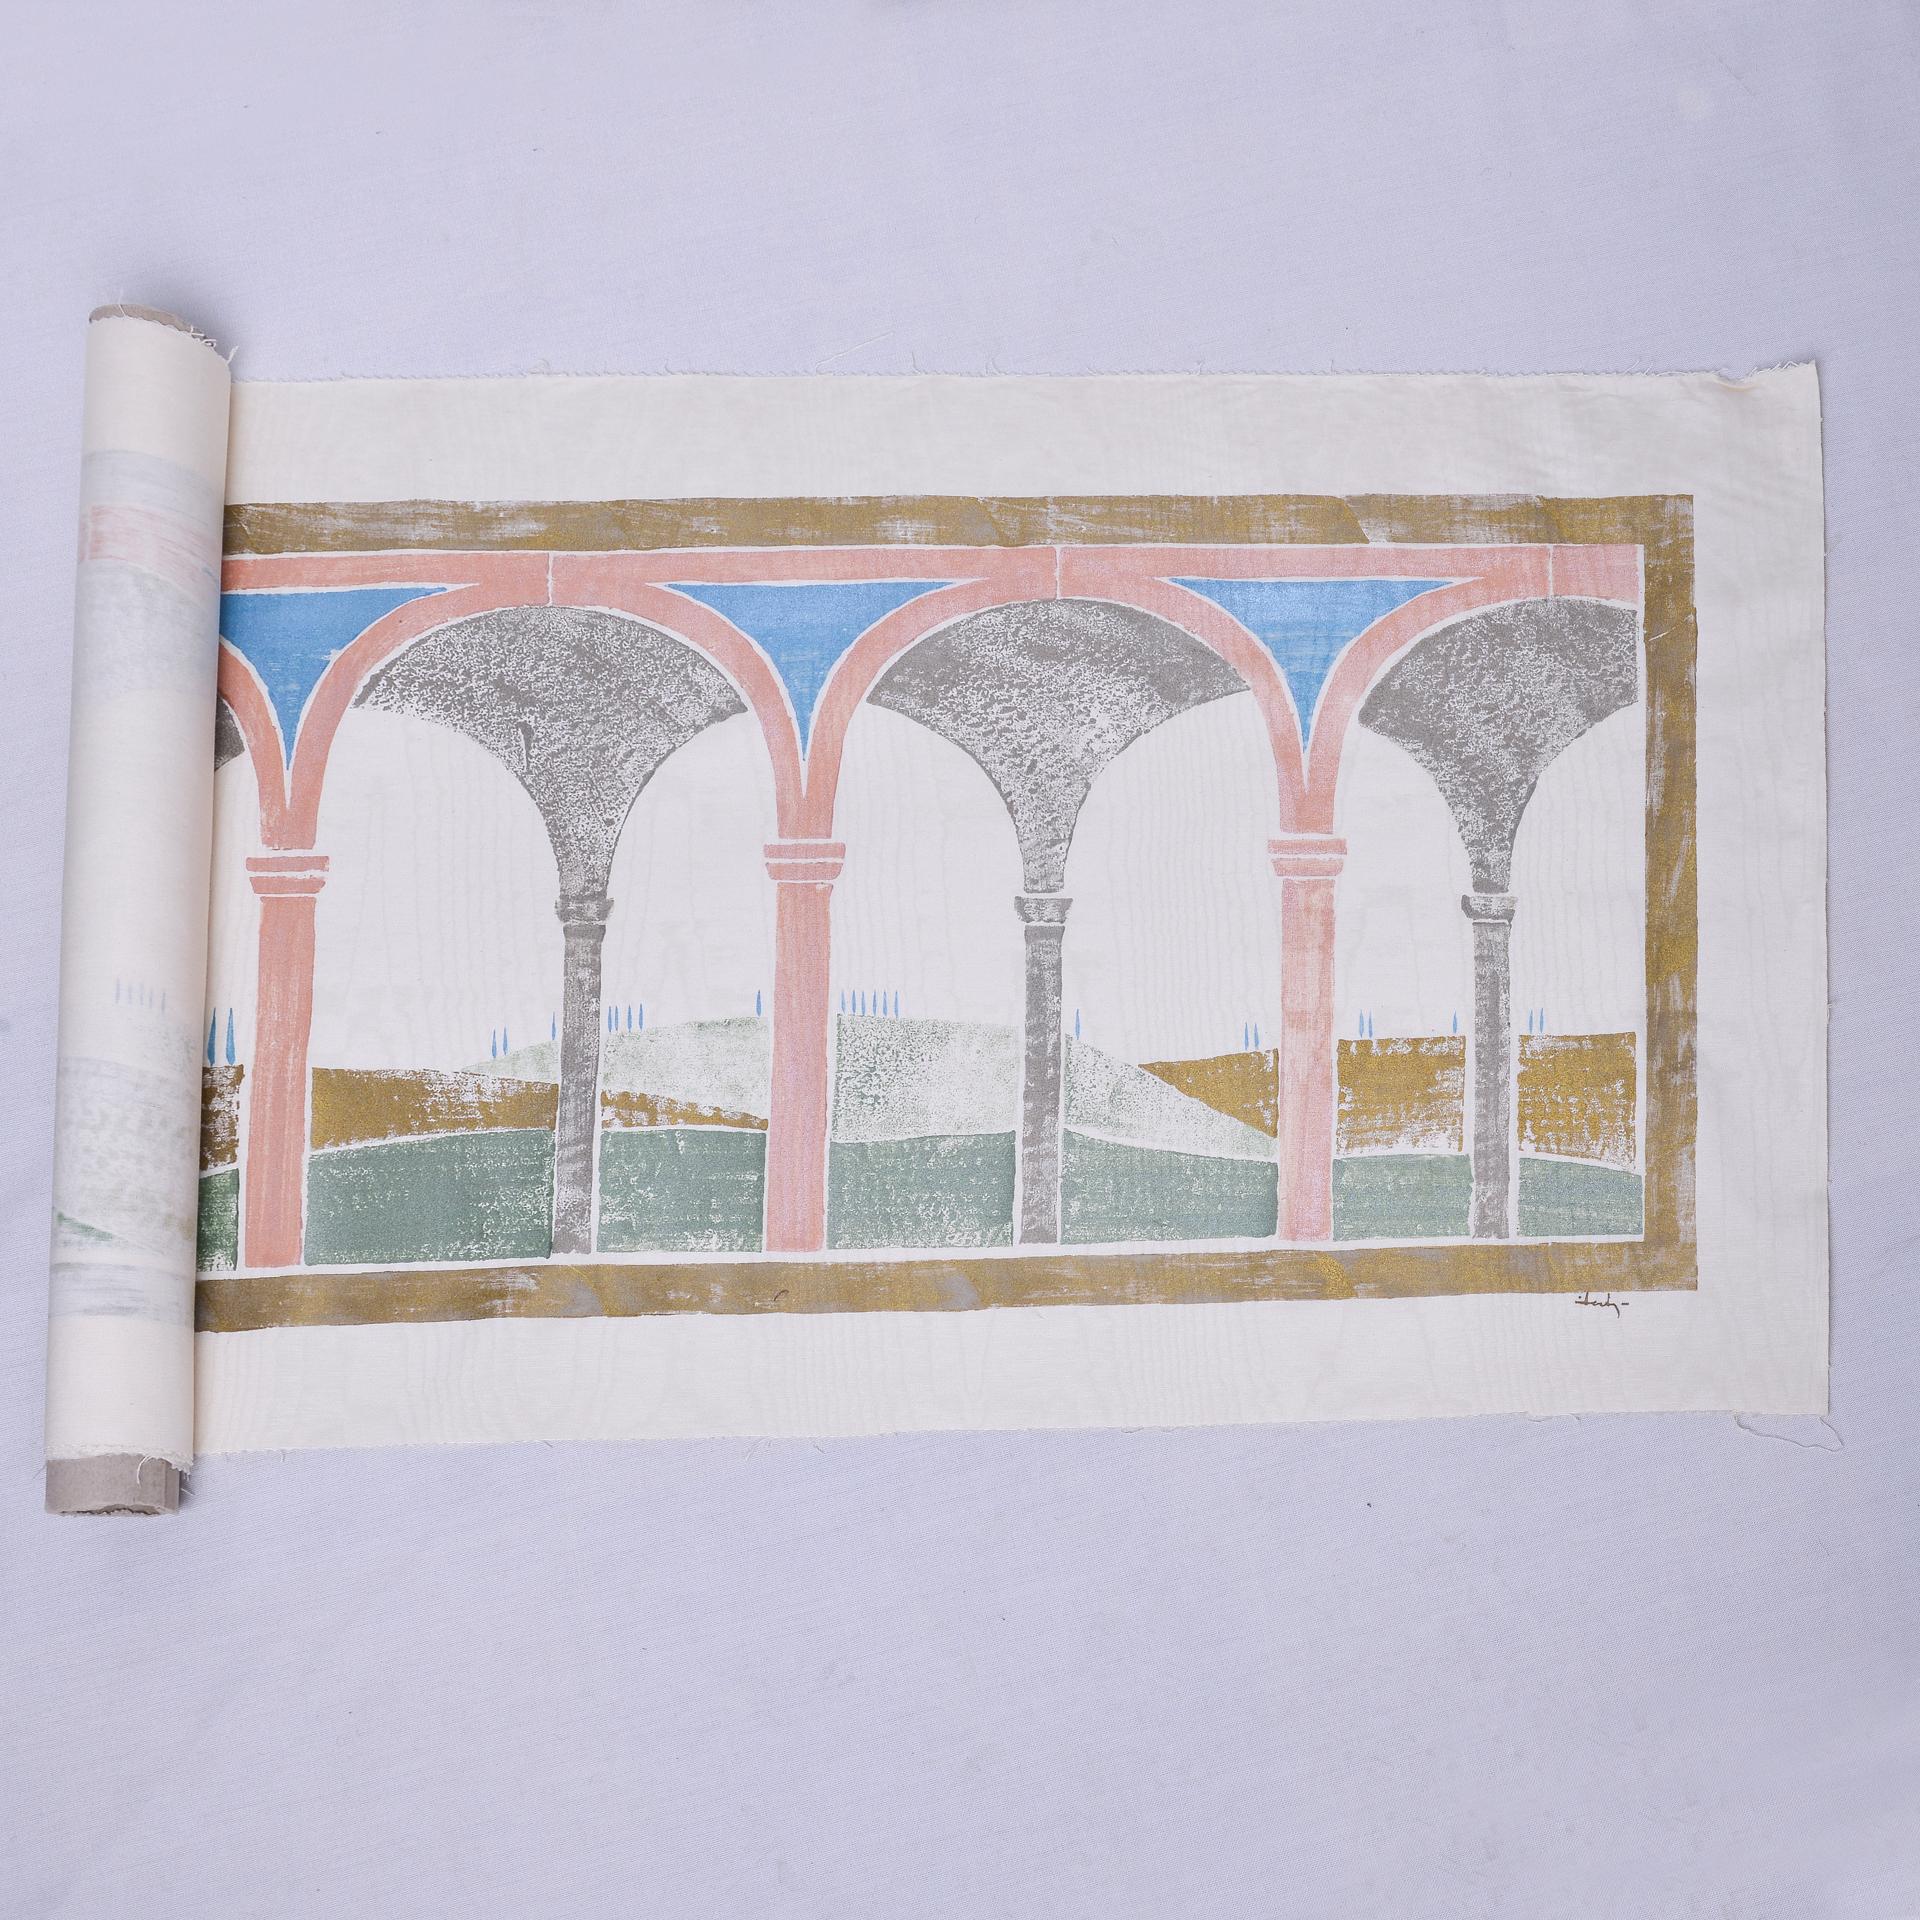 Tapisserie imprimée à la main sur taffetas de soie : par l'architecte italien Zocche dans les années 80, faisant partie d'une collection de paysages italiens maintenant vendue. Je n'ai pas mis le cadre pour faciliter l'expédition.